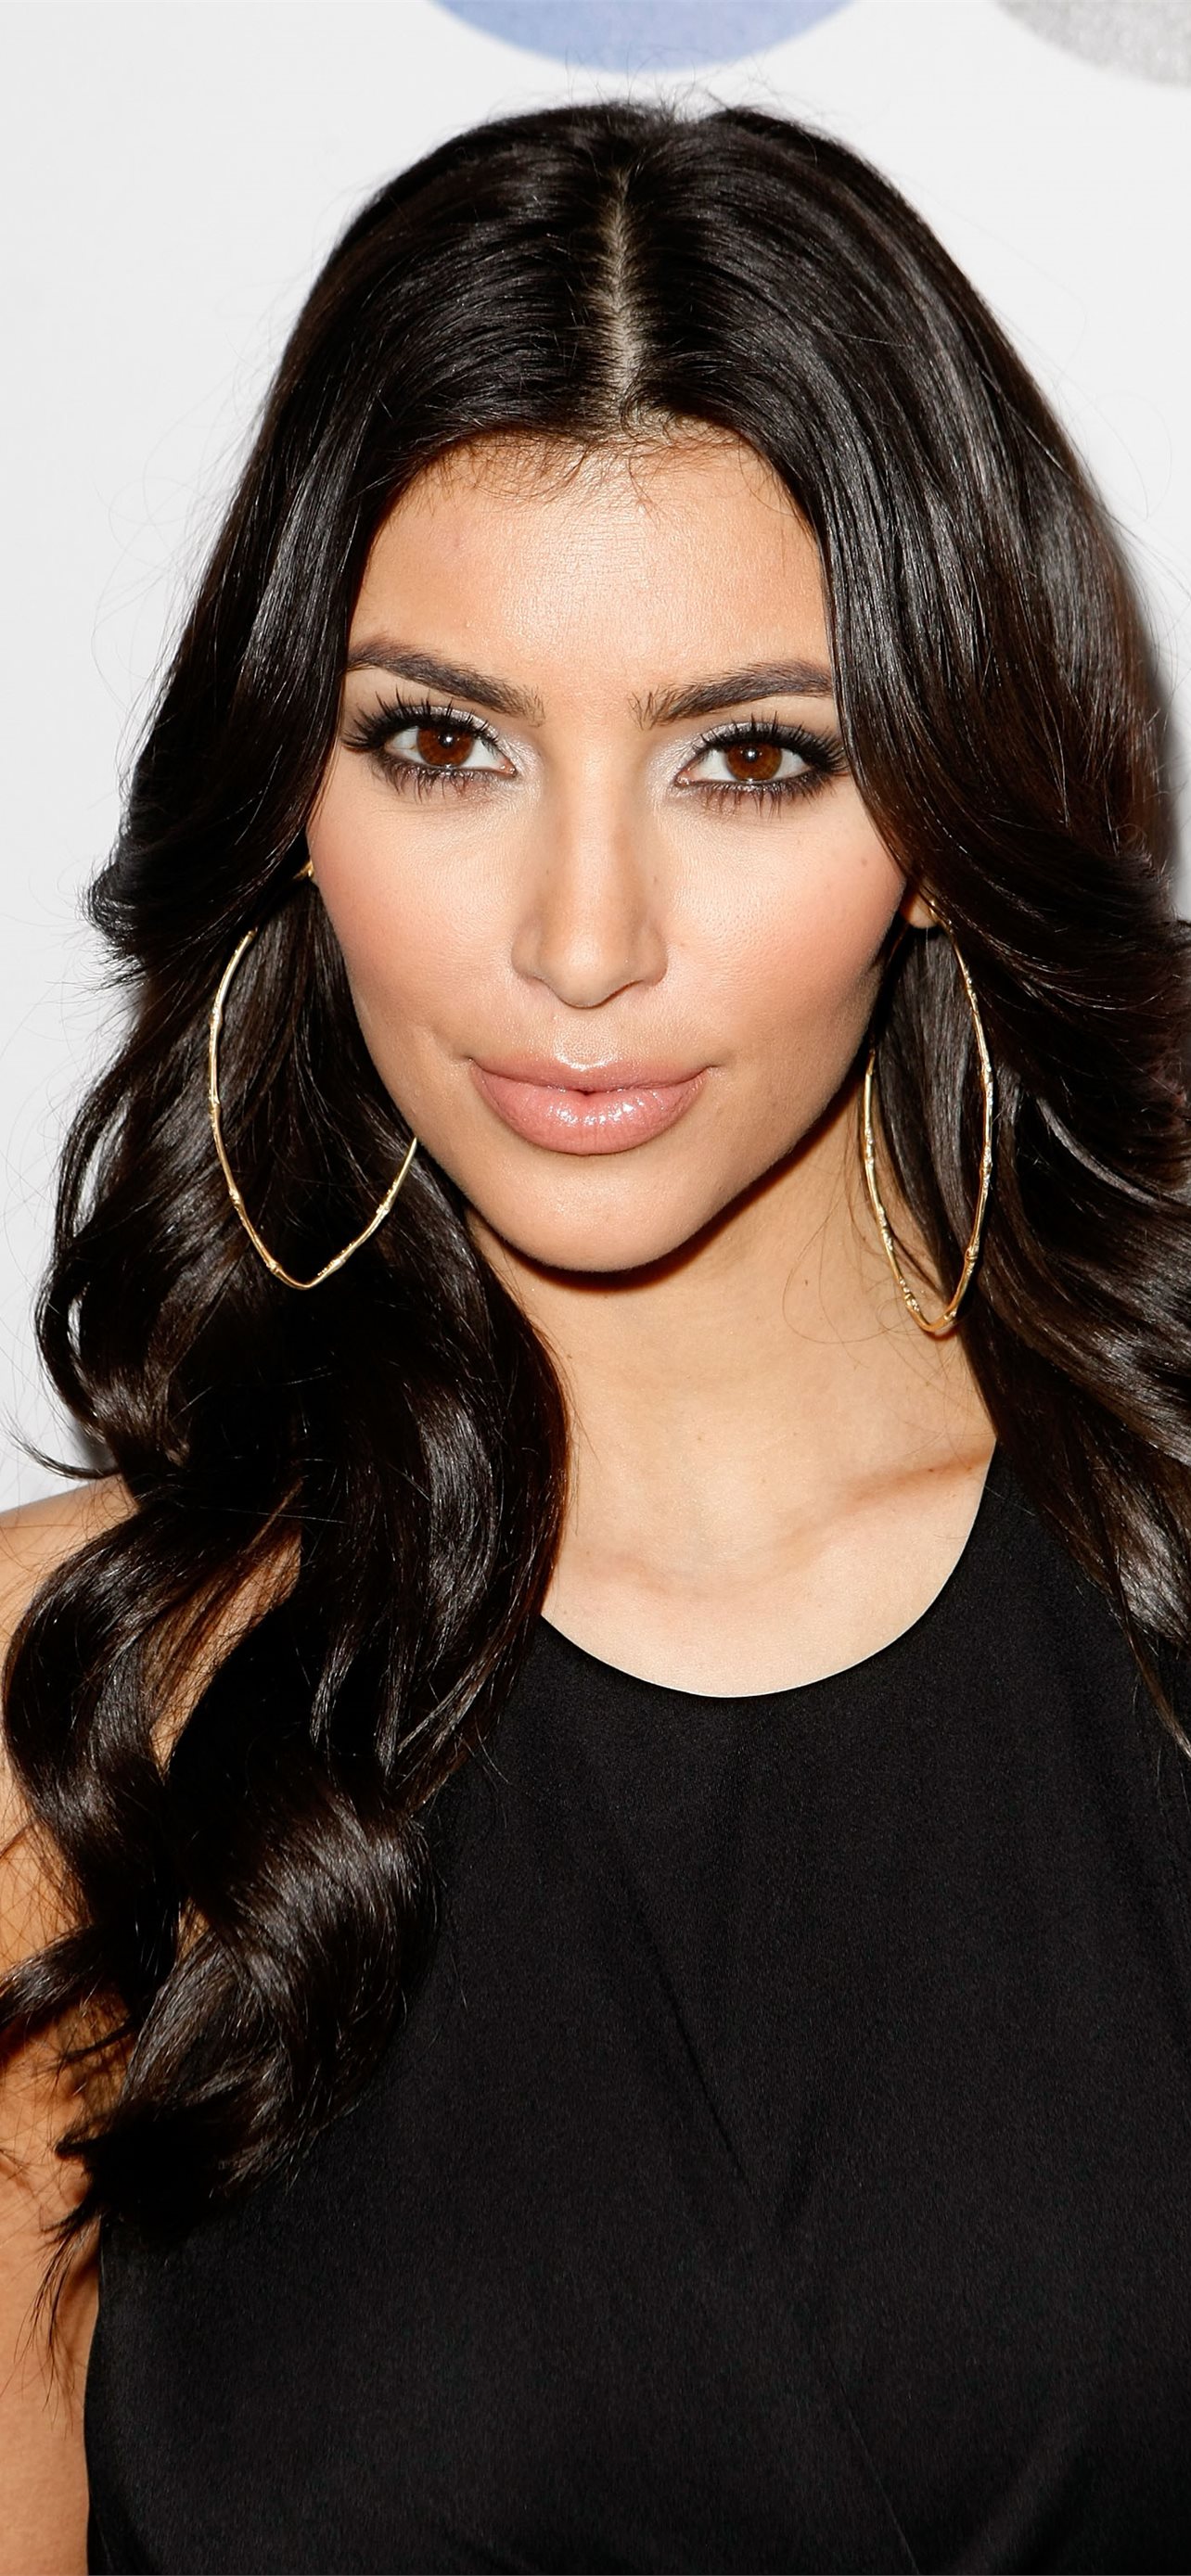 Kim Kardashian Iphone Wallpapers